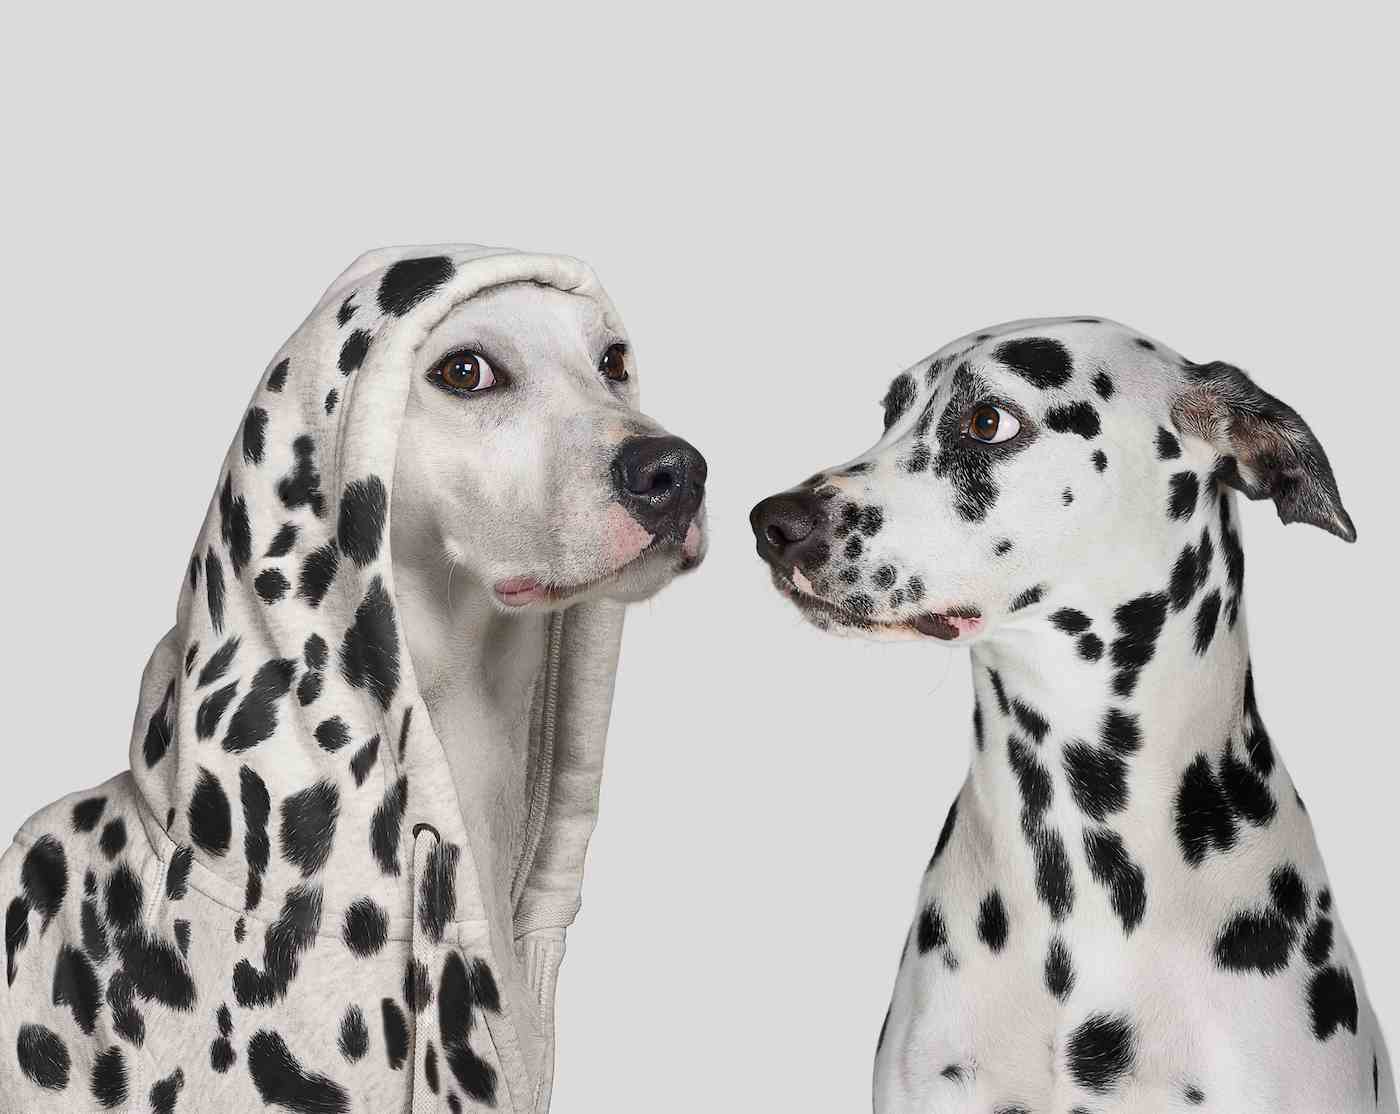 Dalmatiner erschreckt von einem weißen Hund, der einen Hoodie mit Flecken trägt und vorgibt, ein Dalmatiner zu sein